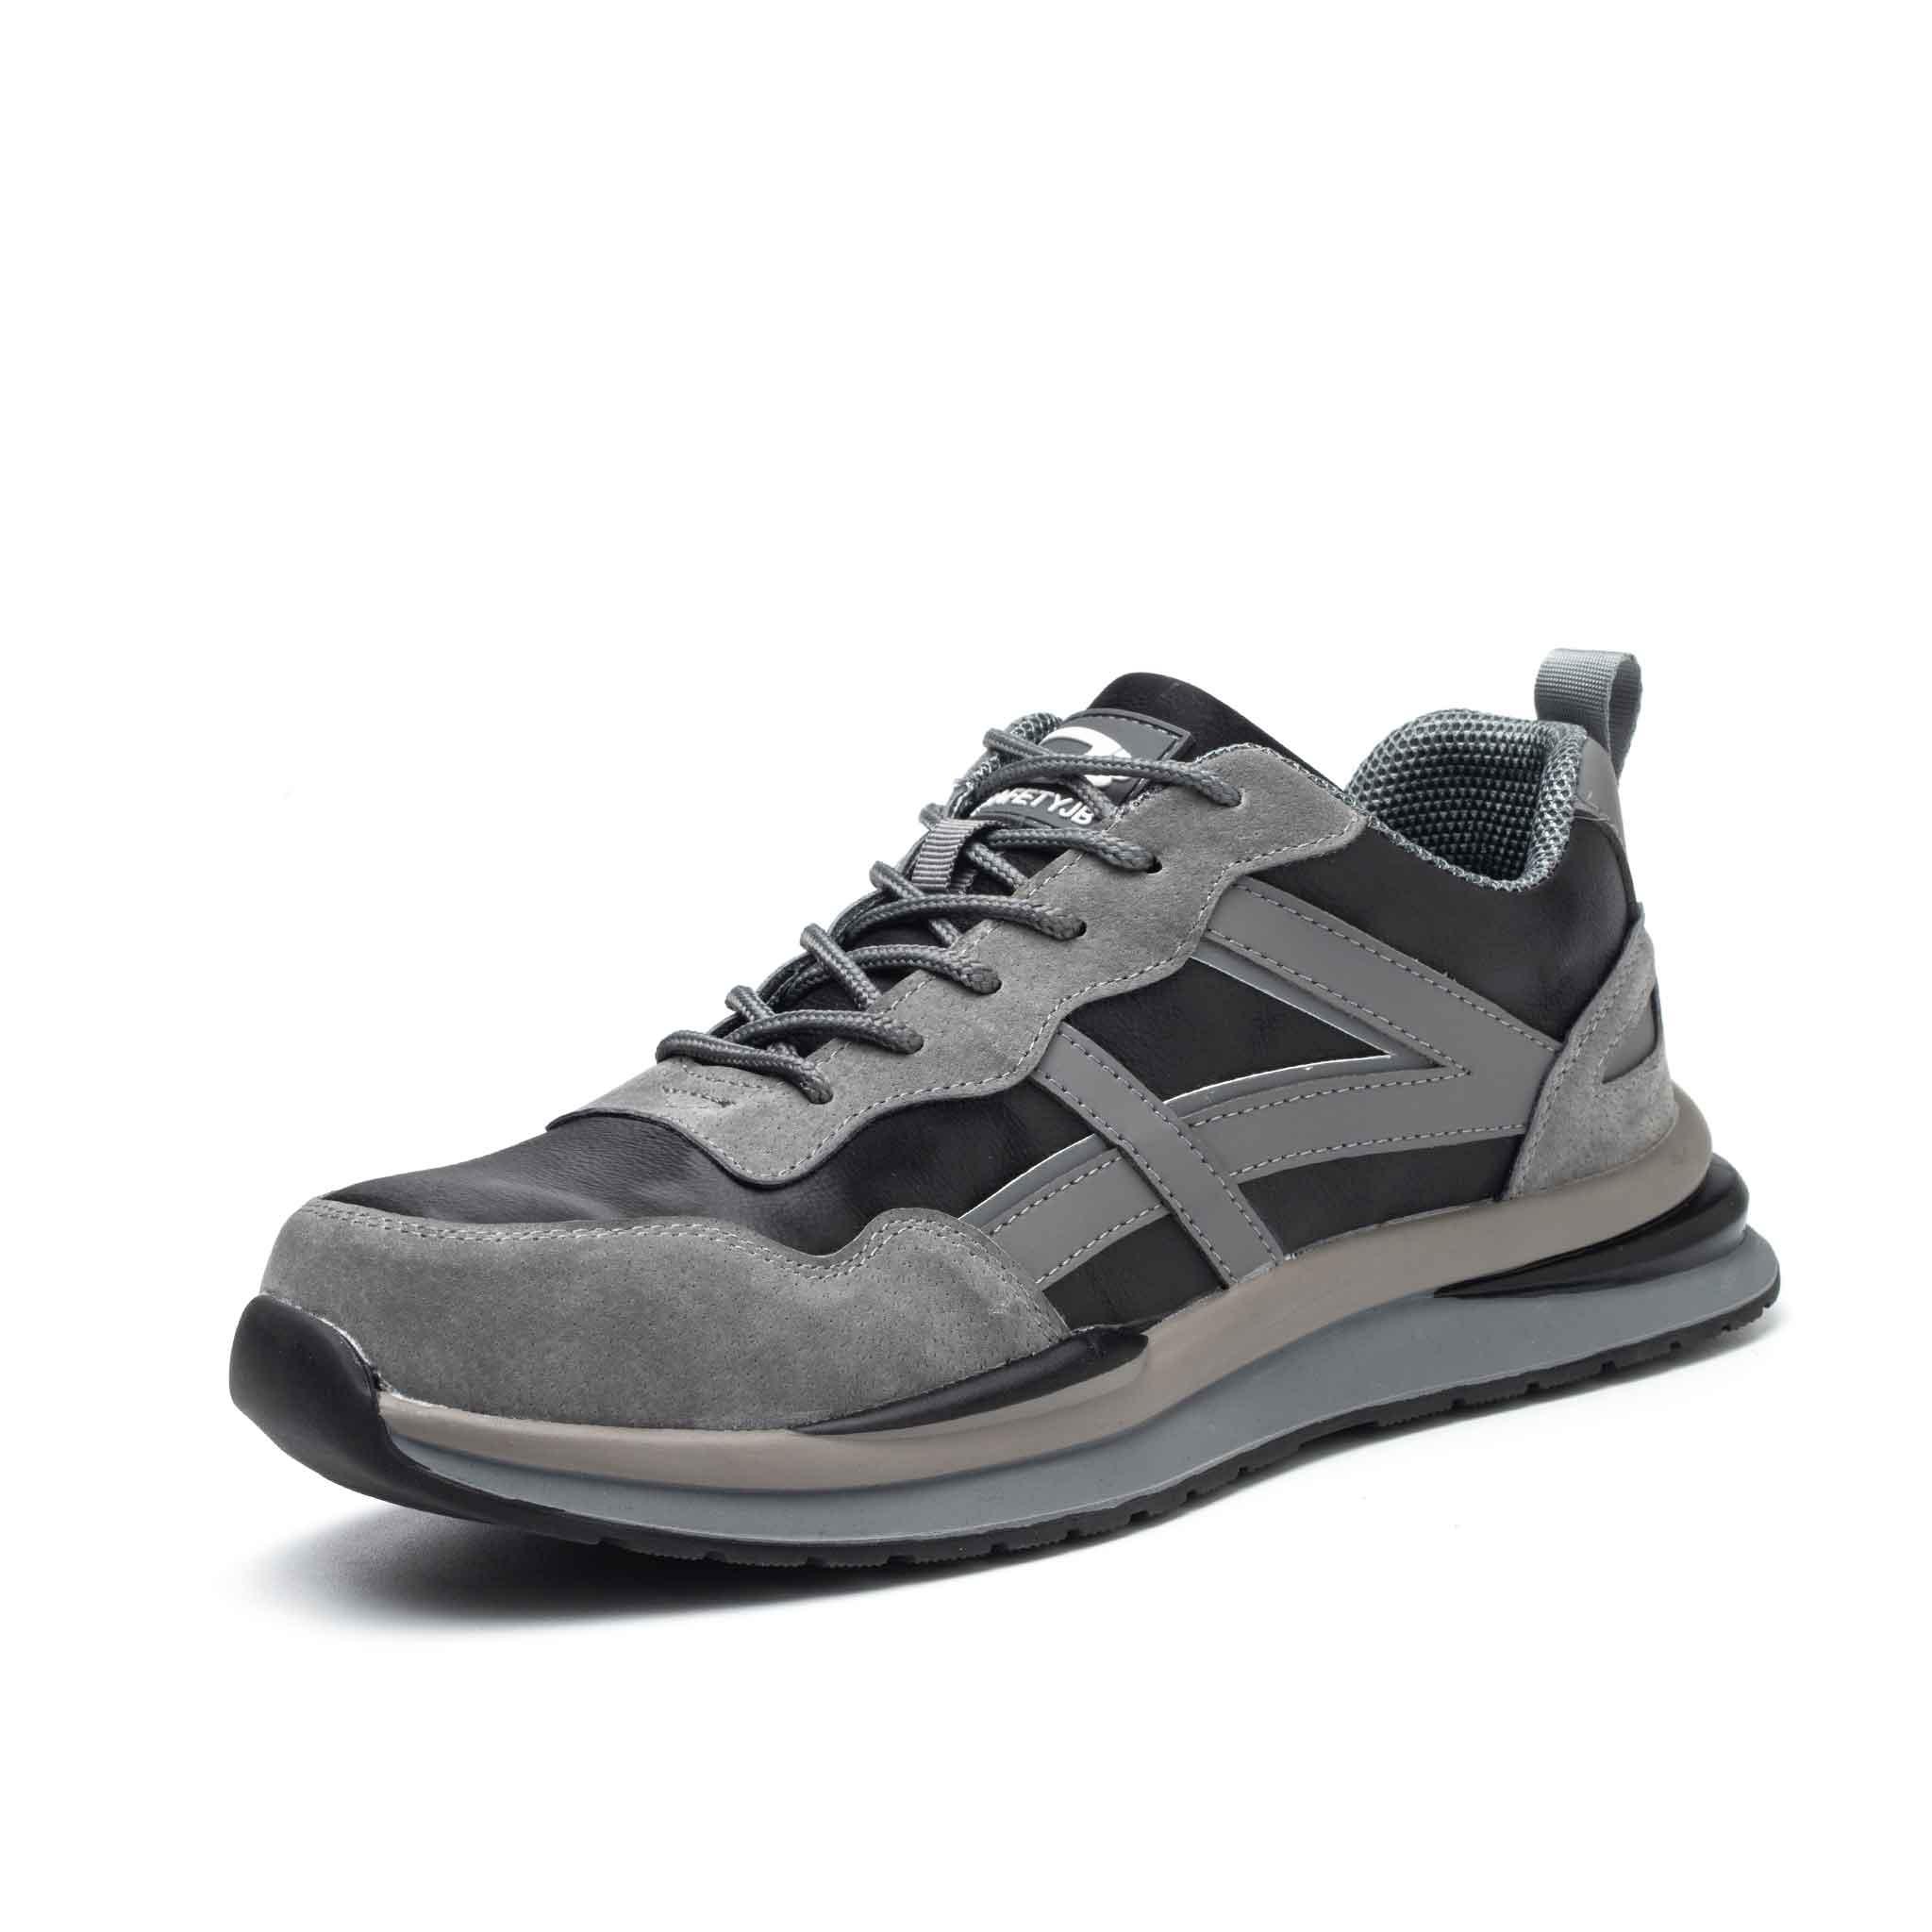 Men's Steel Toe Work Shoes - Adjustable Velcro & Lightweight USINE PRO